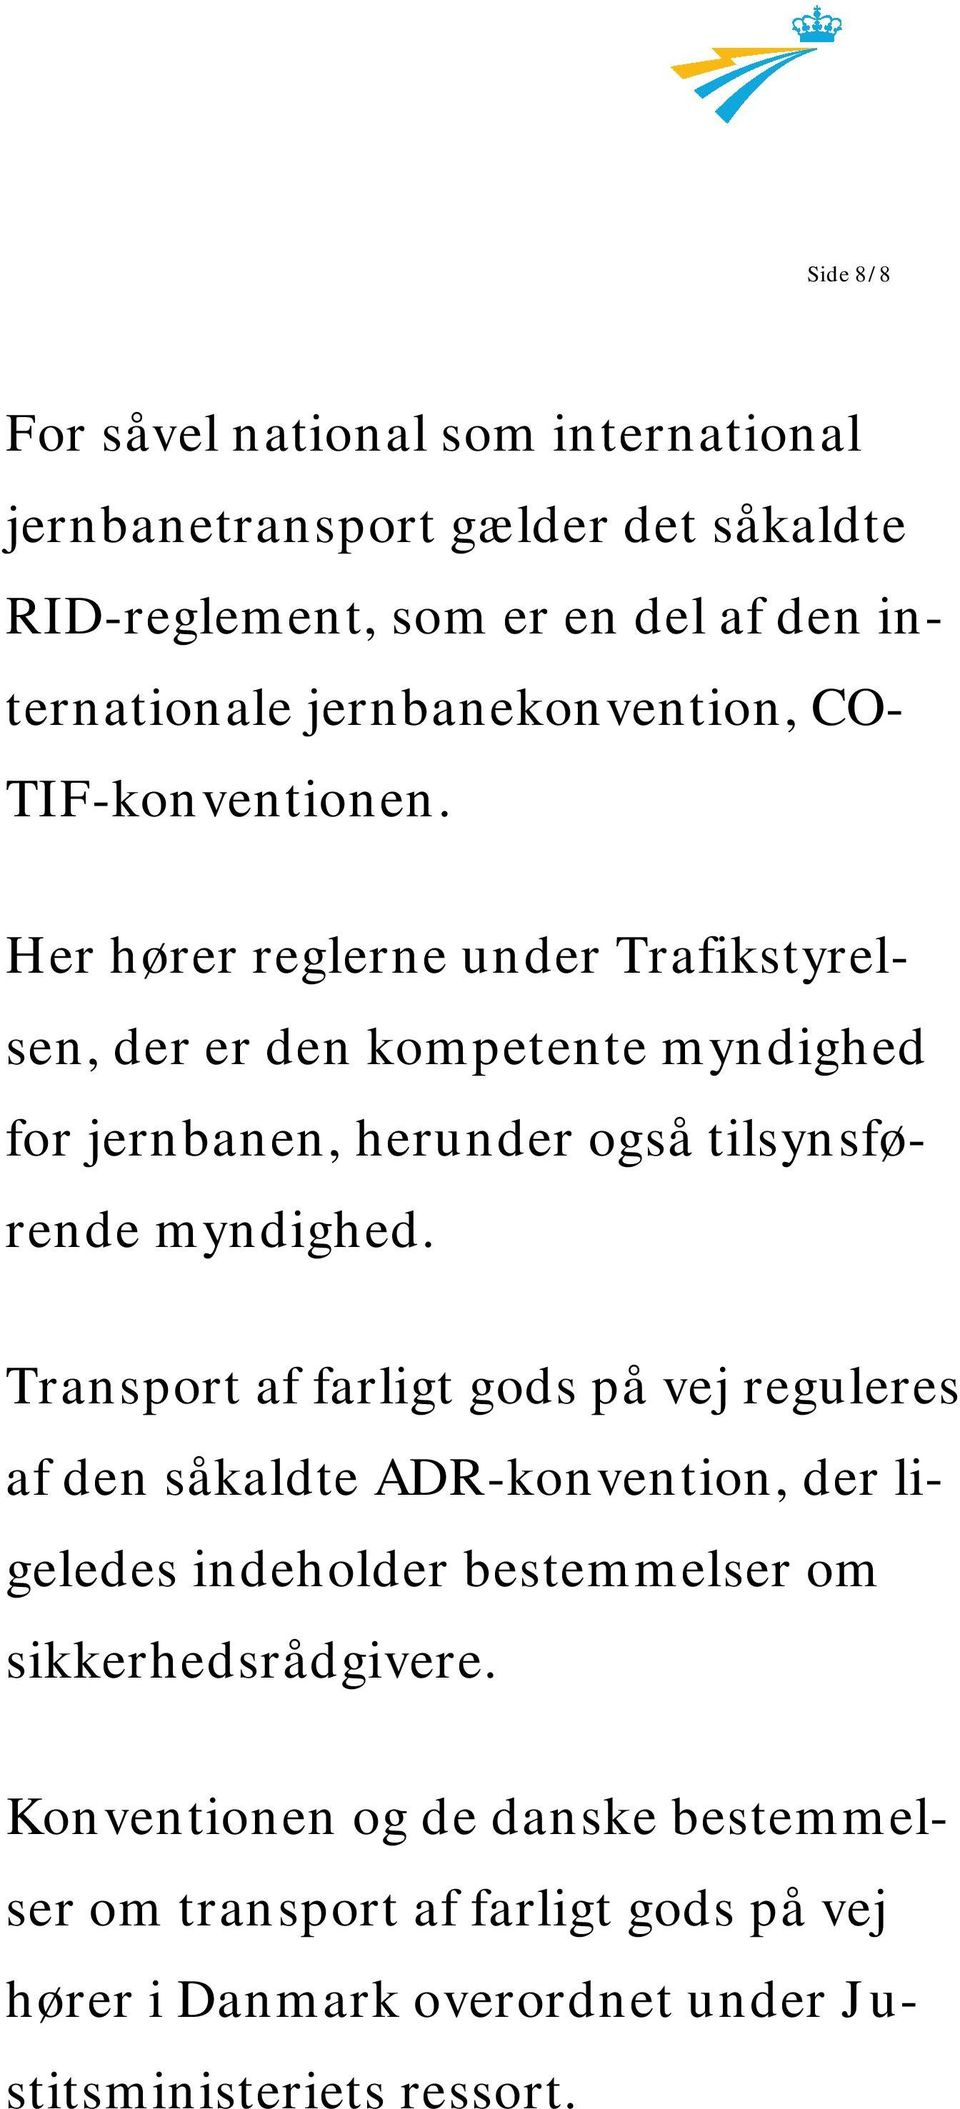 Her hører reglerne under Trafikstyrelsen, der er den kompetente myndighed for jernbanen, herunder også tilsynsførende myndighed.